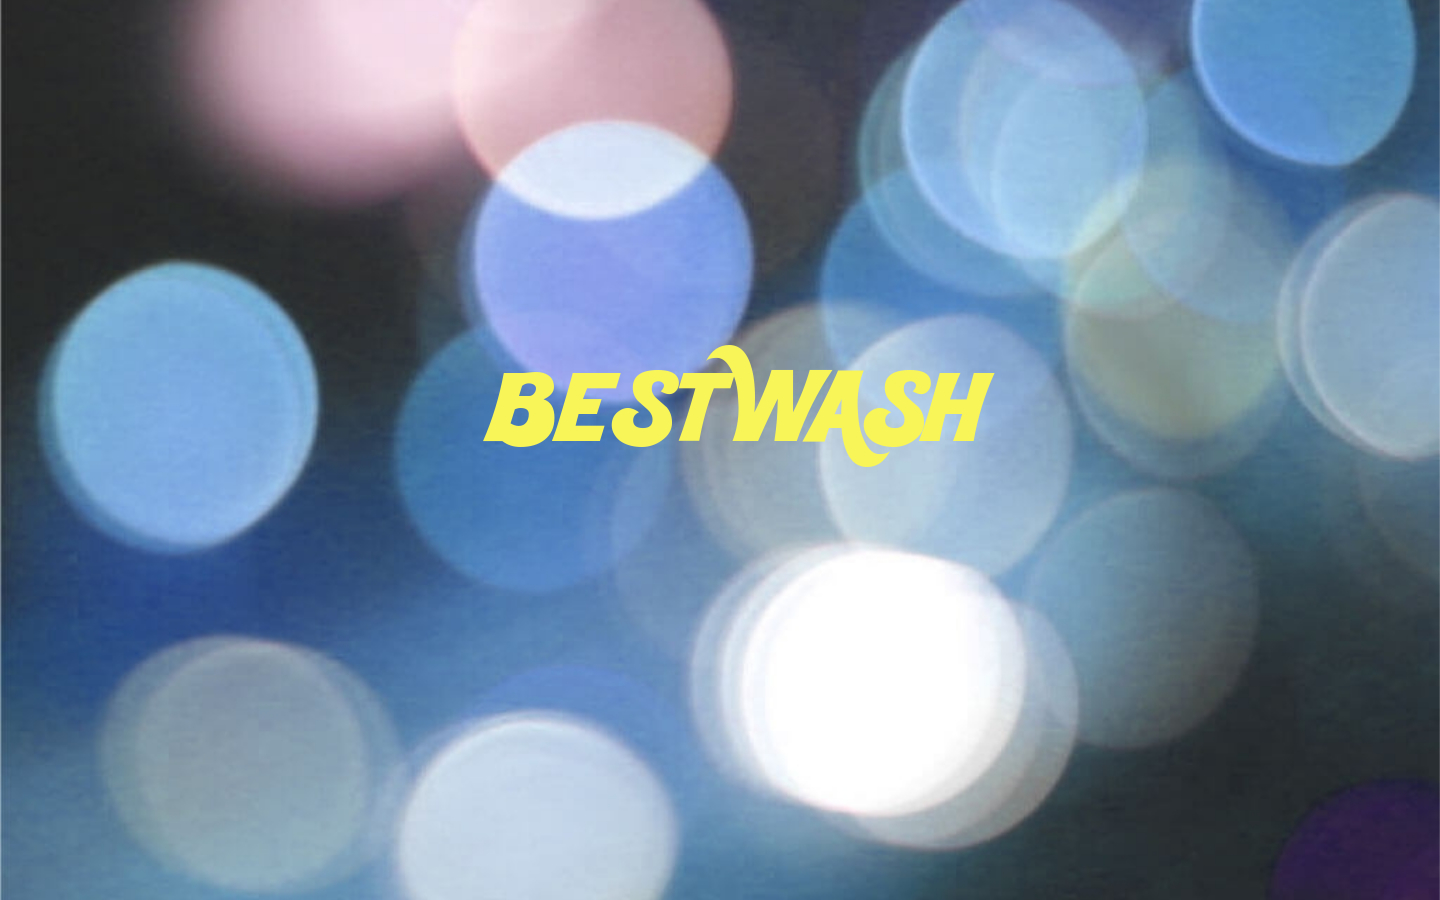 Best Wash